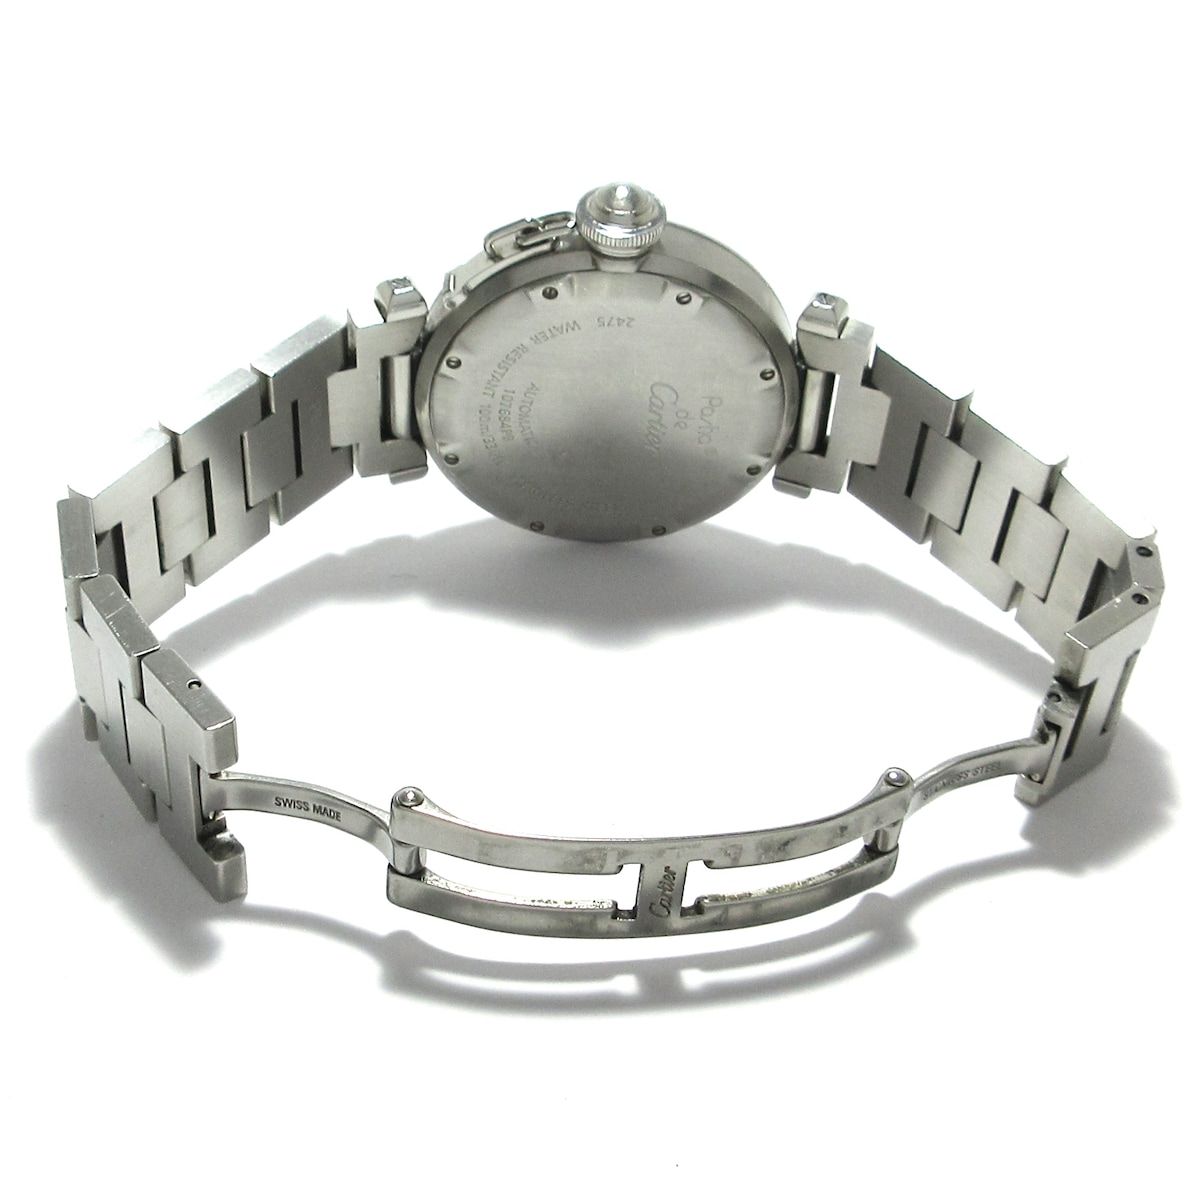 Cartier(カルティエ) 腕時計 パシャCビッグデイト W31044M7 ボーイズ ...